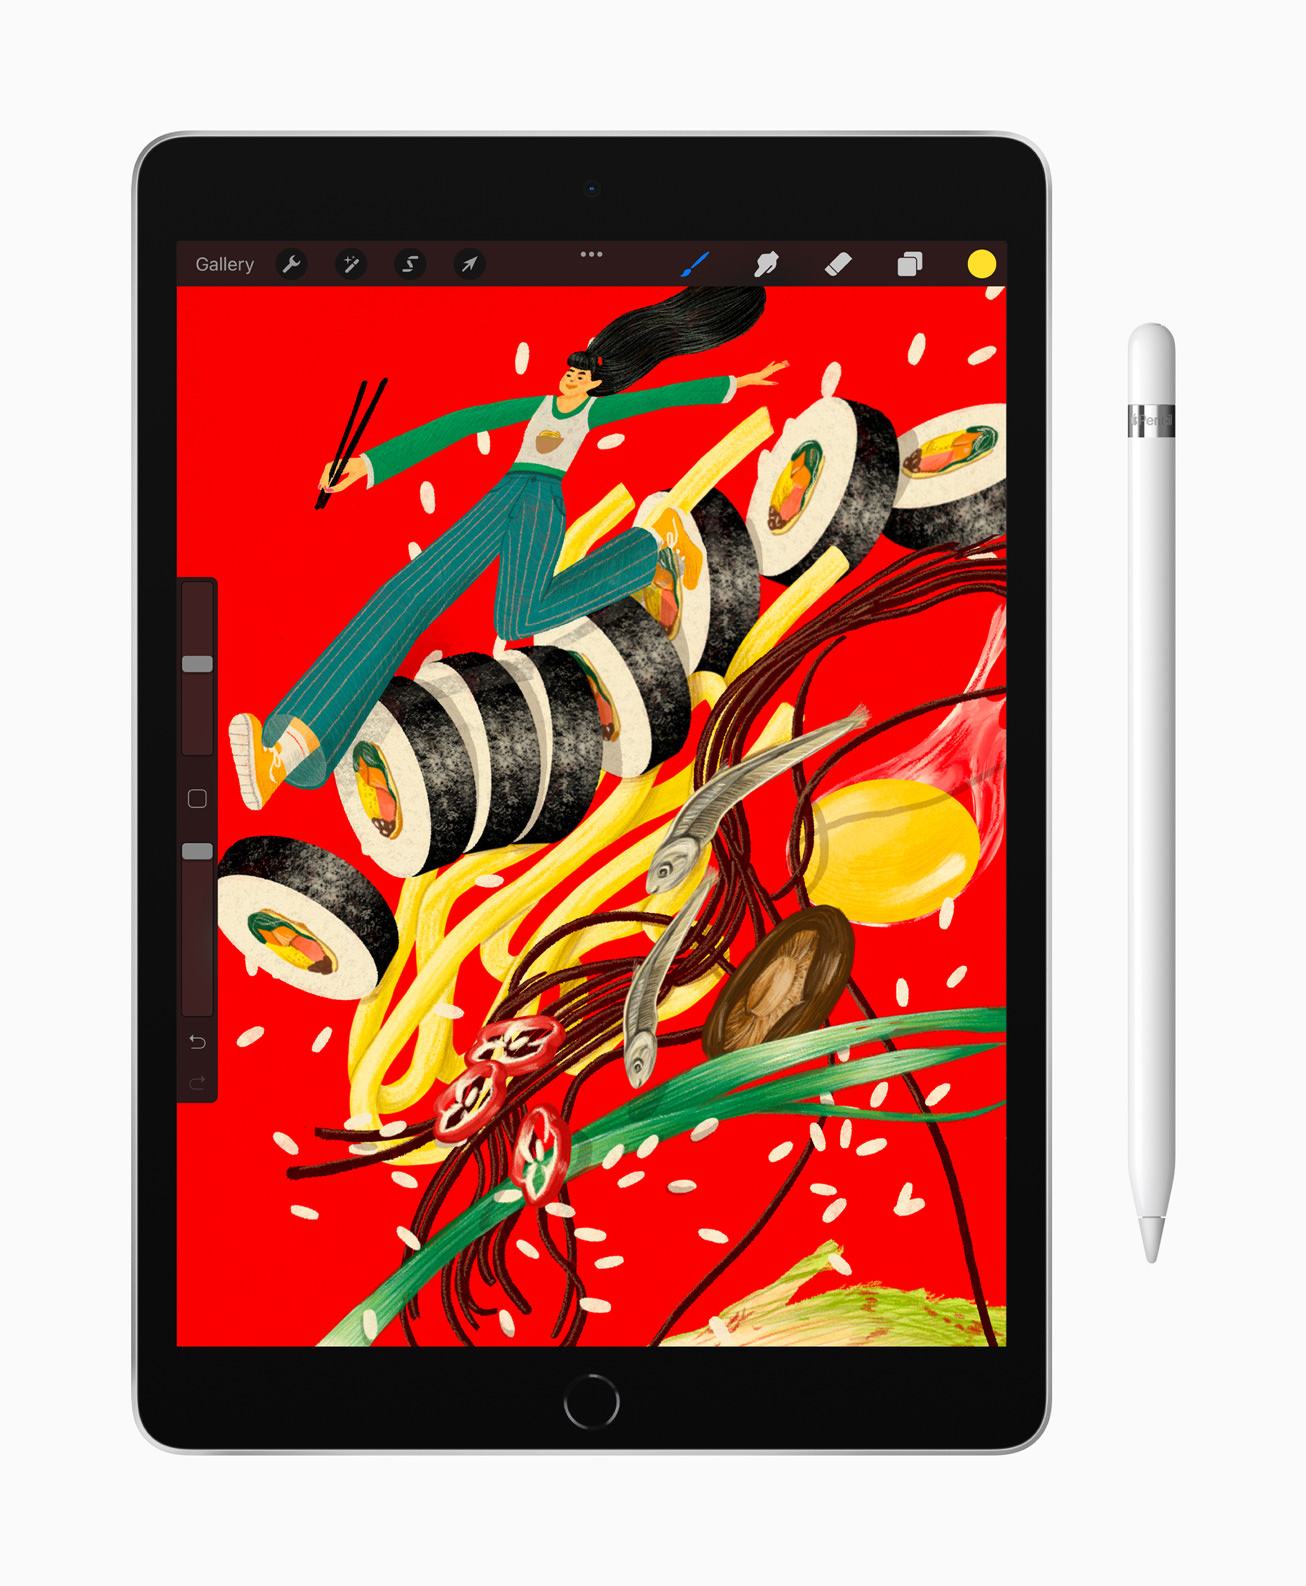 「iPad（第9世代）」「iPad mini（第6世代）」を発表、9月24日発売